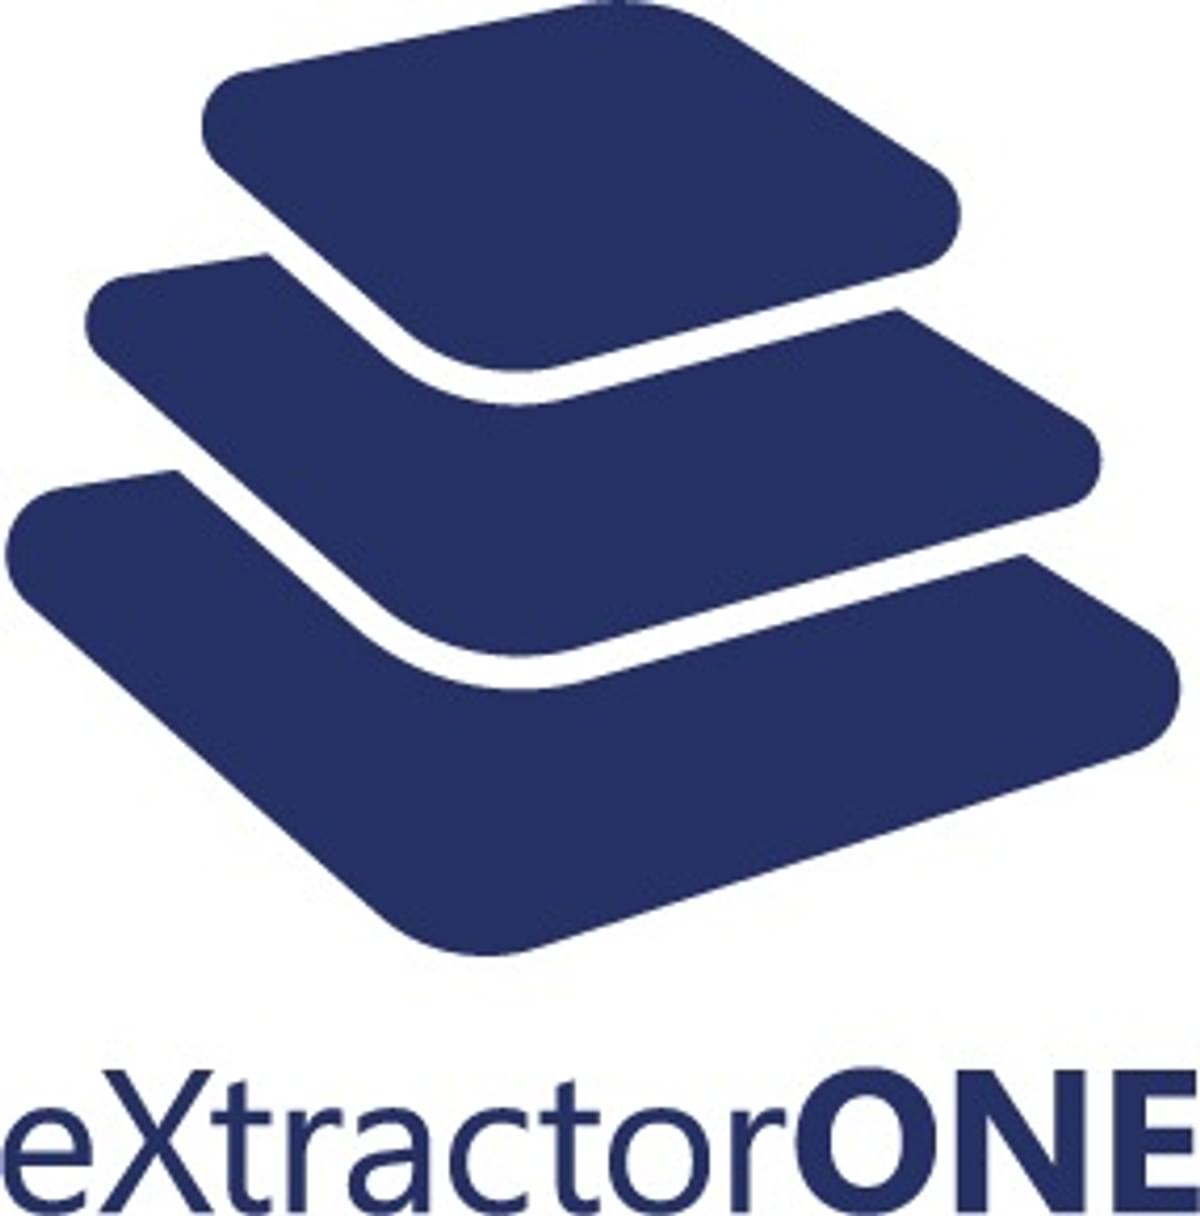 eXtractorONE vindt nieuwe participant in Eindhoven image